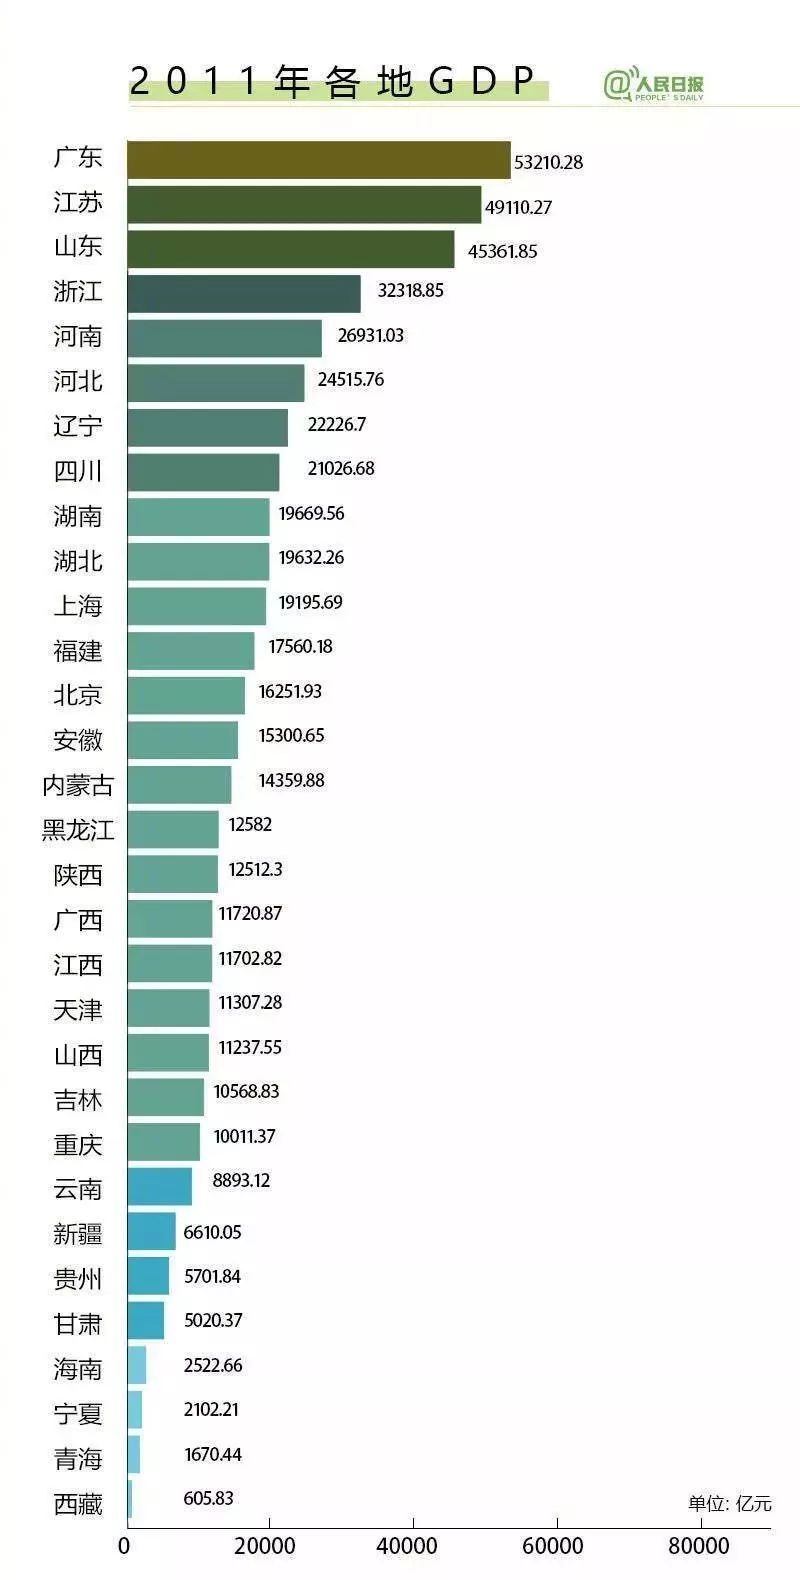 2019gdp中国_最新2019年中国gdp总值分布